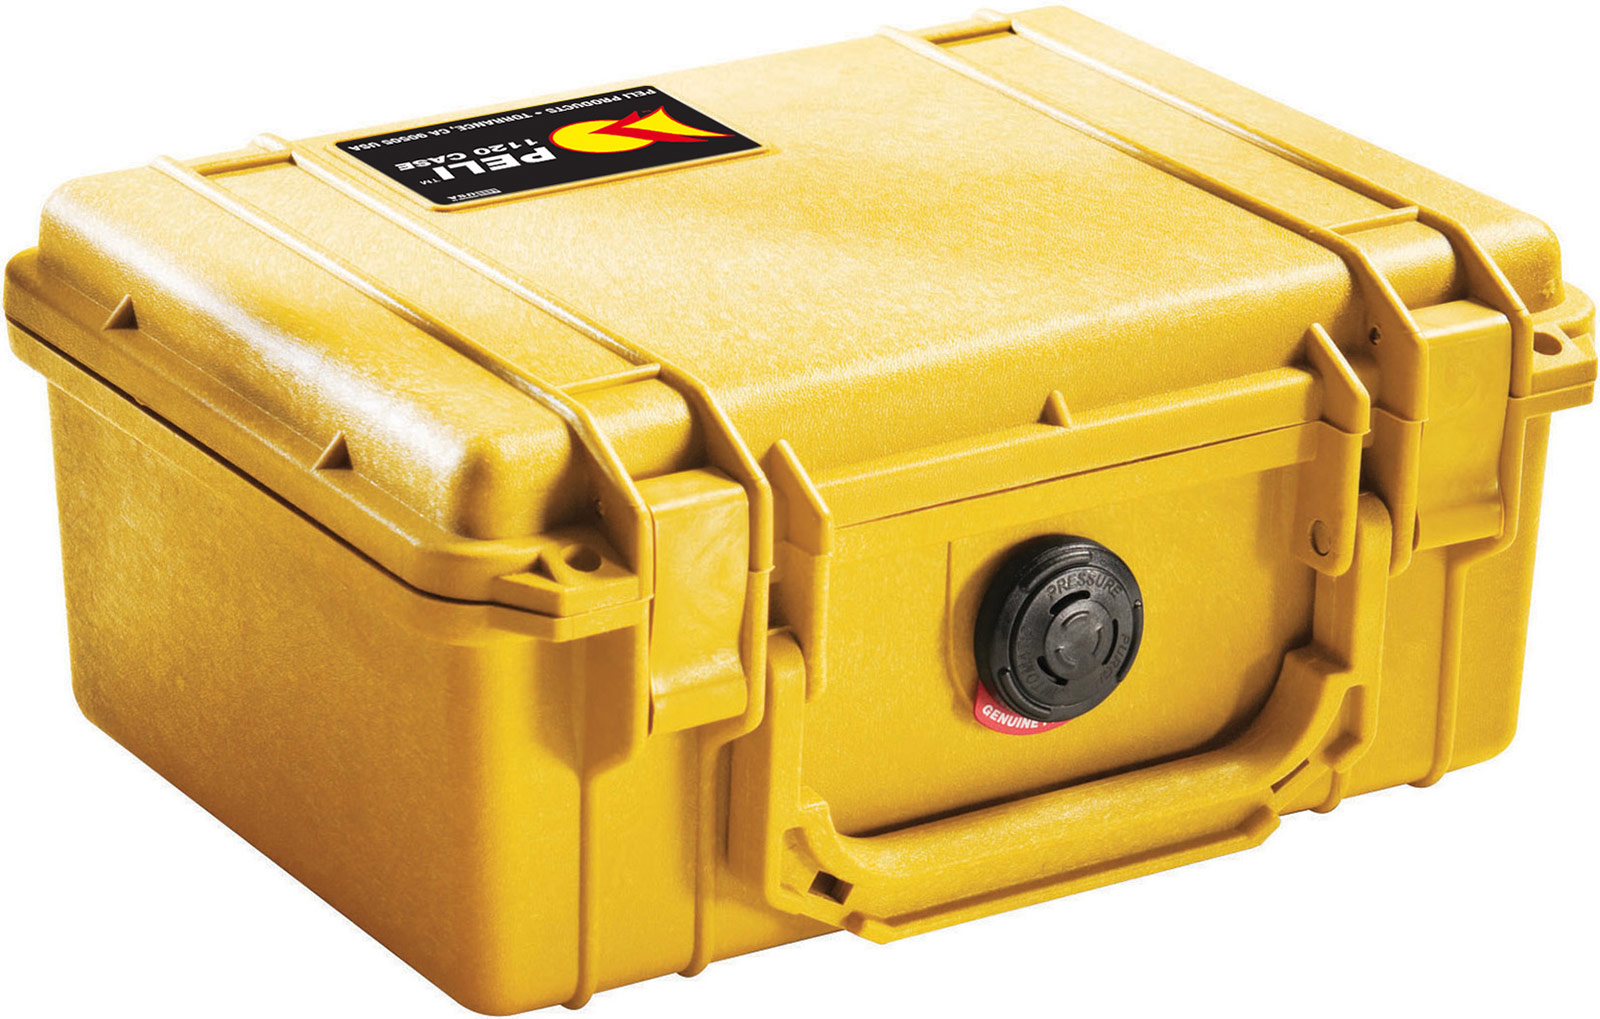 Protector Case 1120 žlutý s pěnou